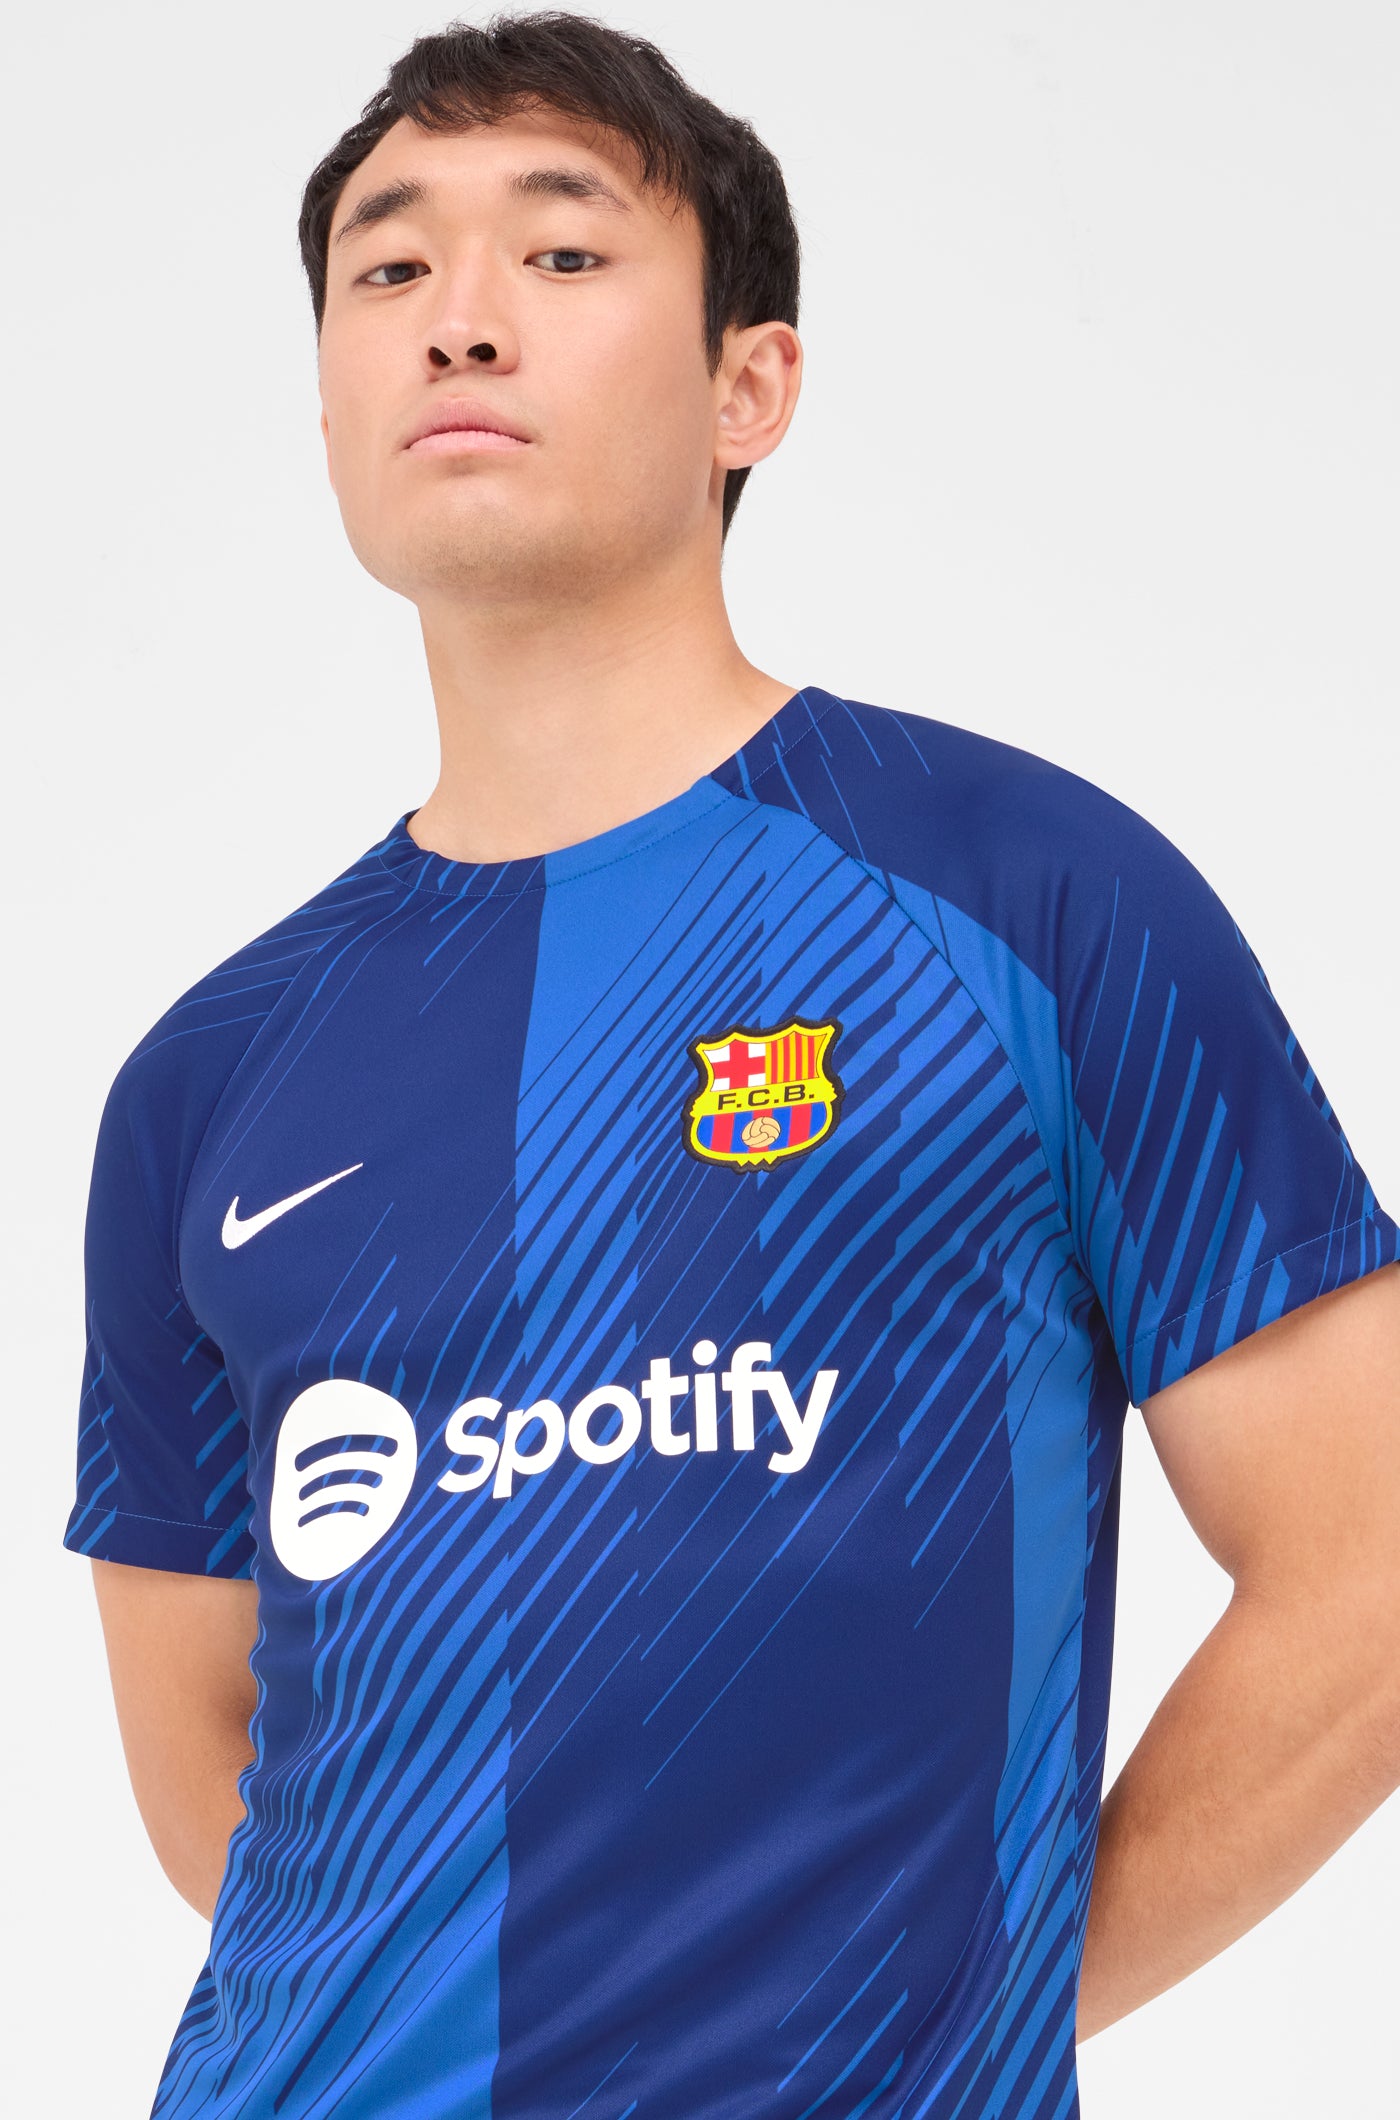 El contundente desmentido del Barça sobre su próxima camiseta